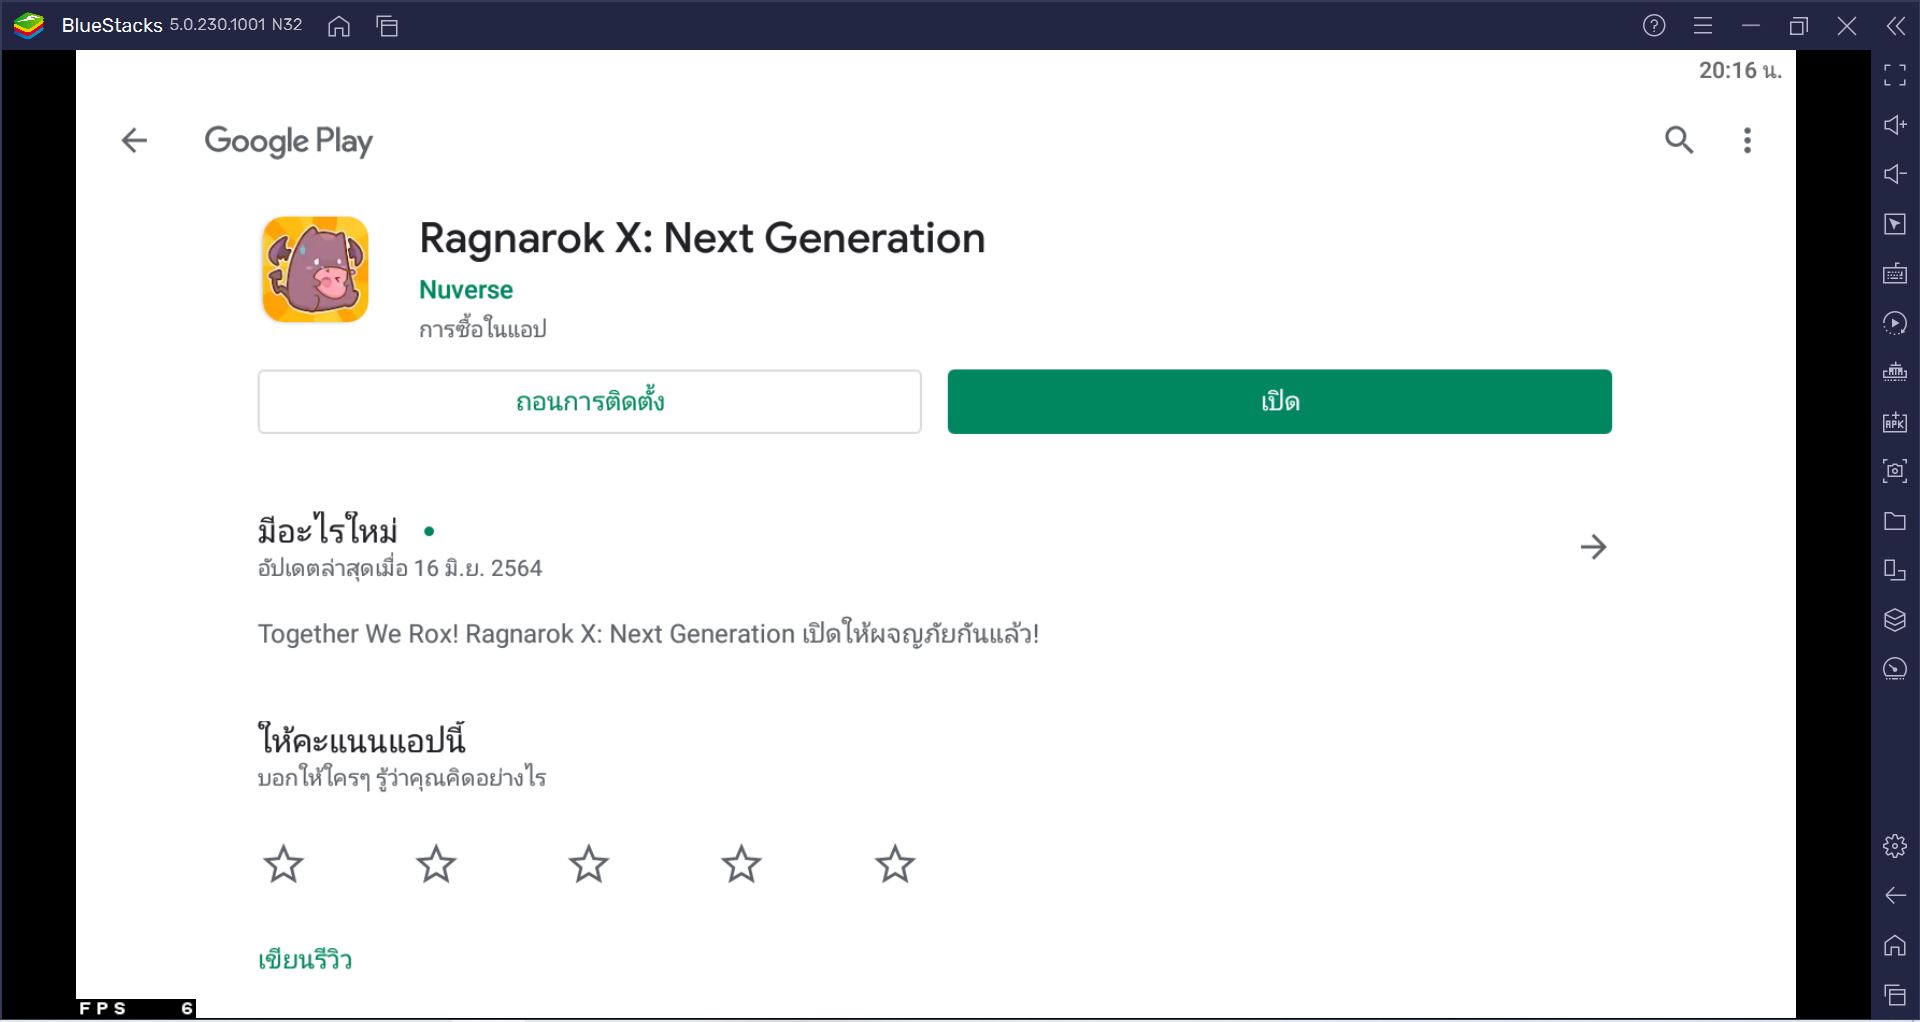 วิธีติดตั้ง Ragnarok X: Next Generation บน PC และ Mac ผ่าน BlueStacks